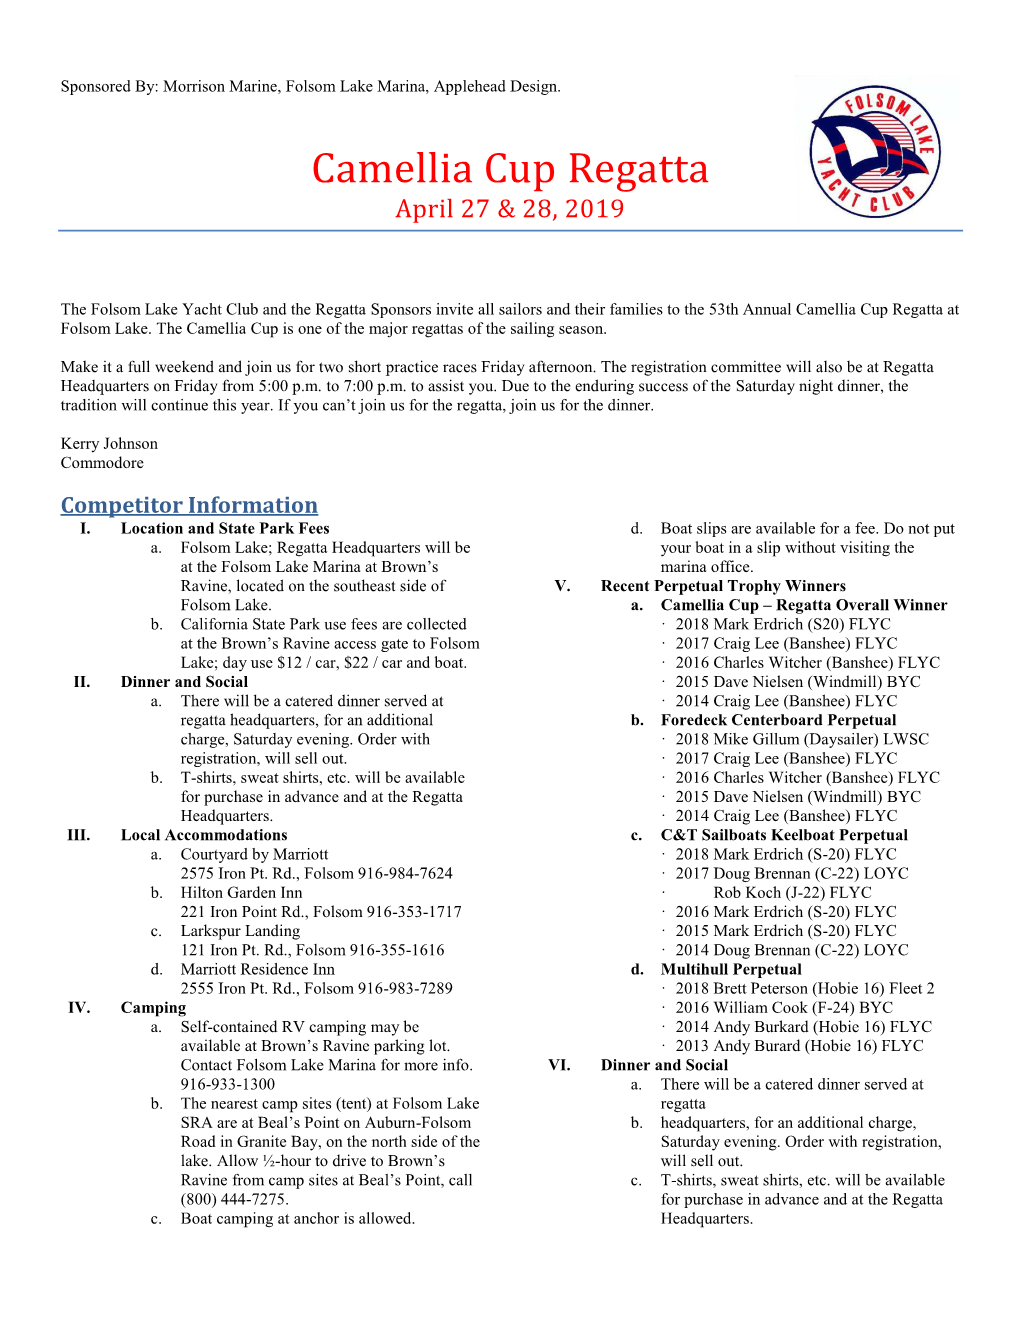 Camellia Cup Regatta April 27 & 28, 2019